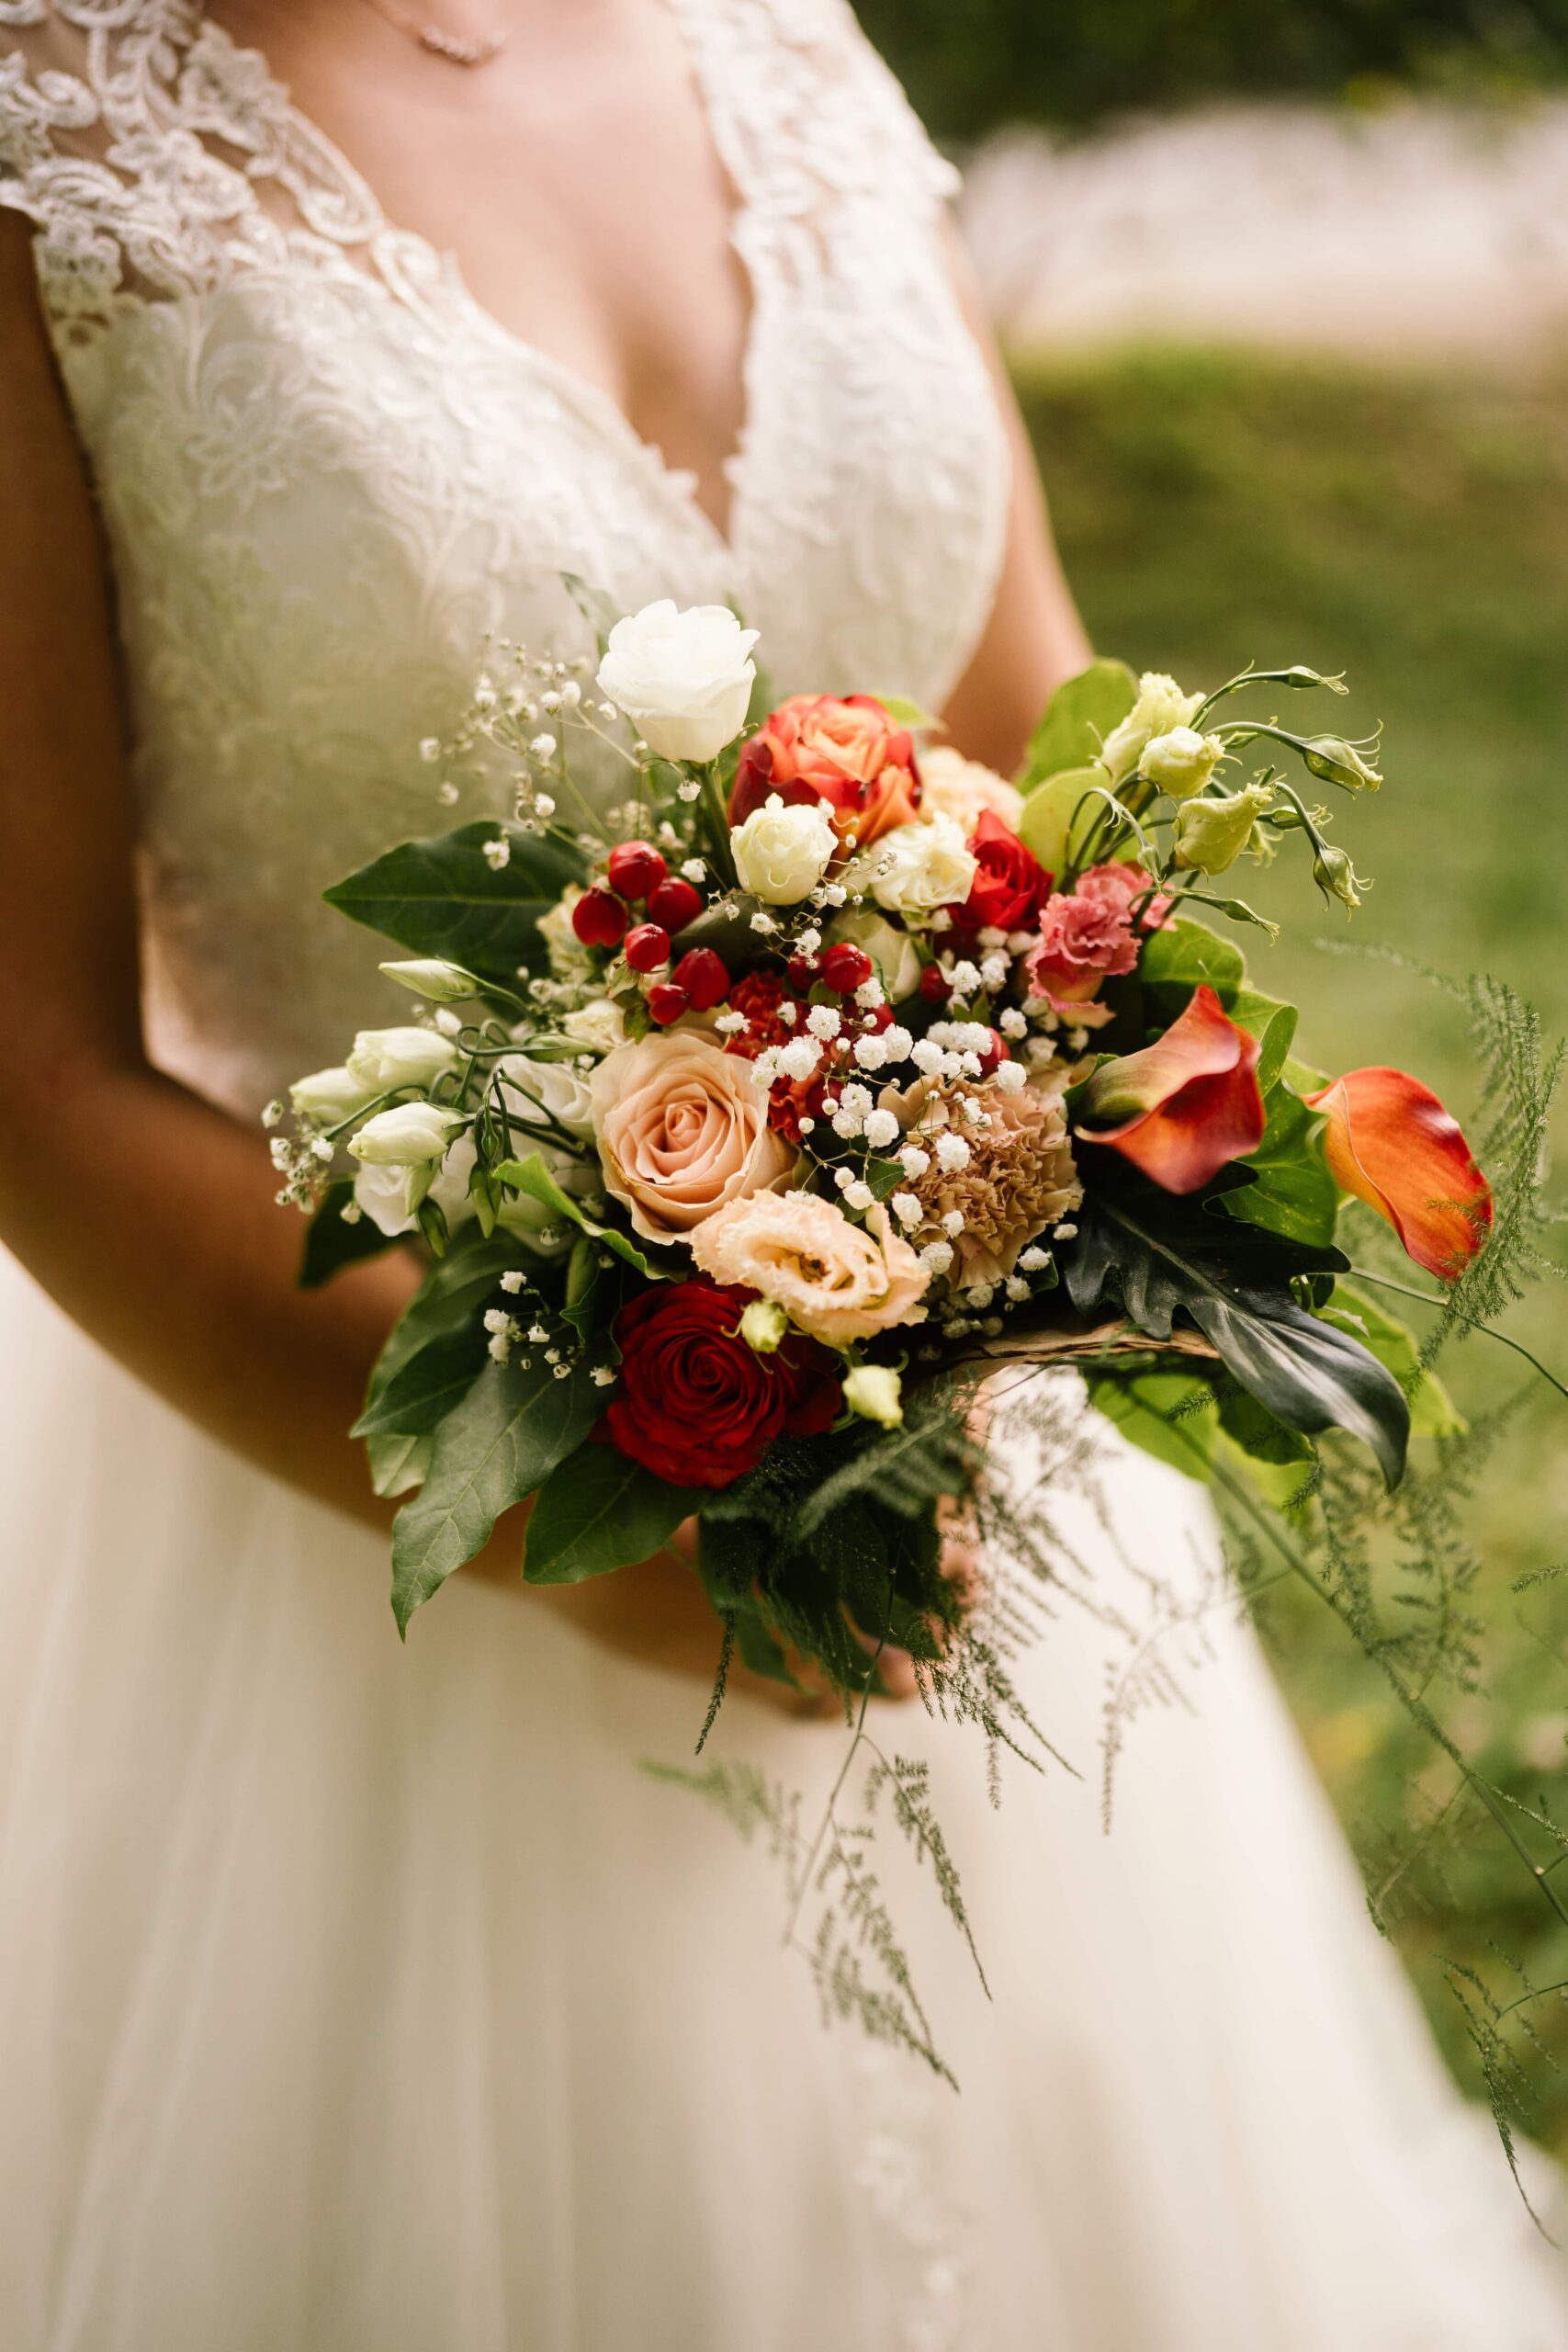 Bouquet mariée original et coloré avec fleurs de fruits et légumes, et autre fleurs champêtres